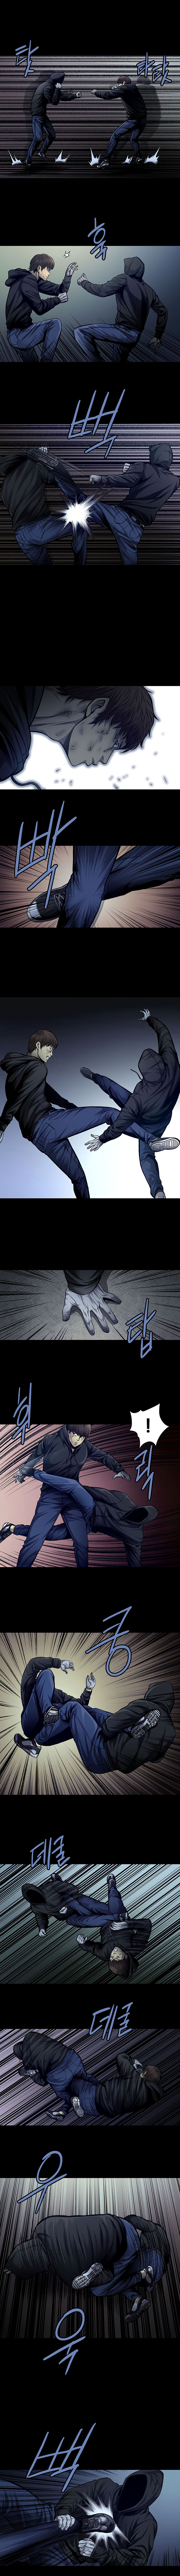 Vigilante - Chapter 42 Page 3